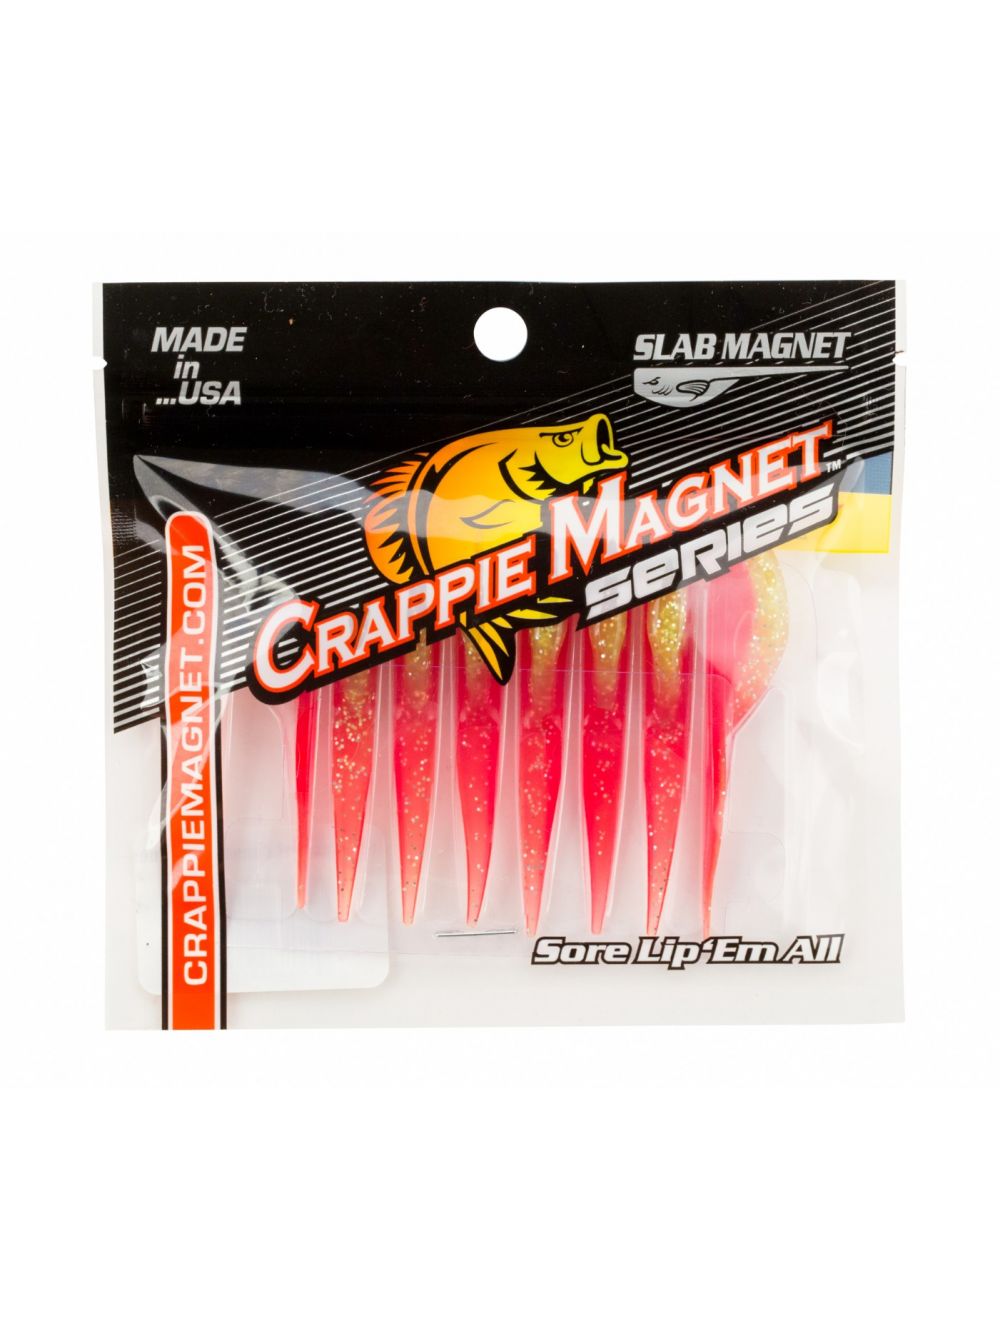 Leland Lures Trout Magnet 142 Piece Kits